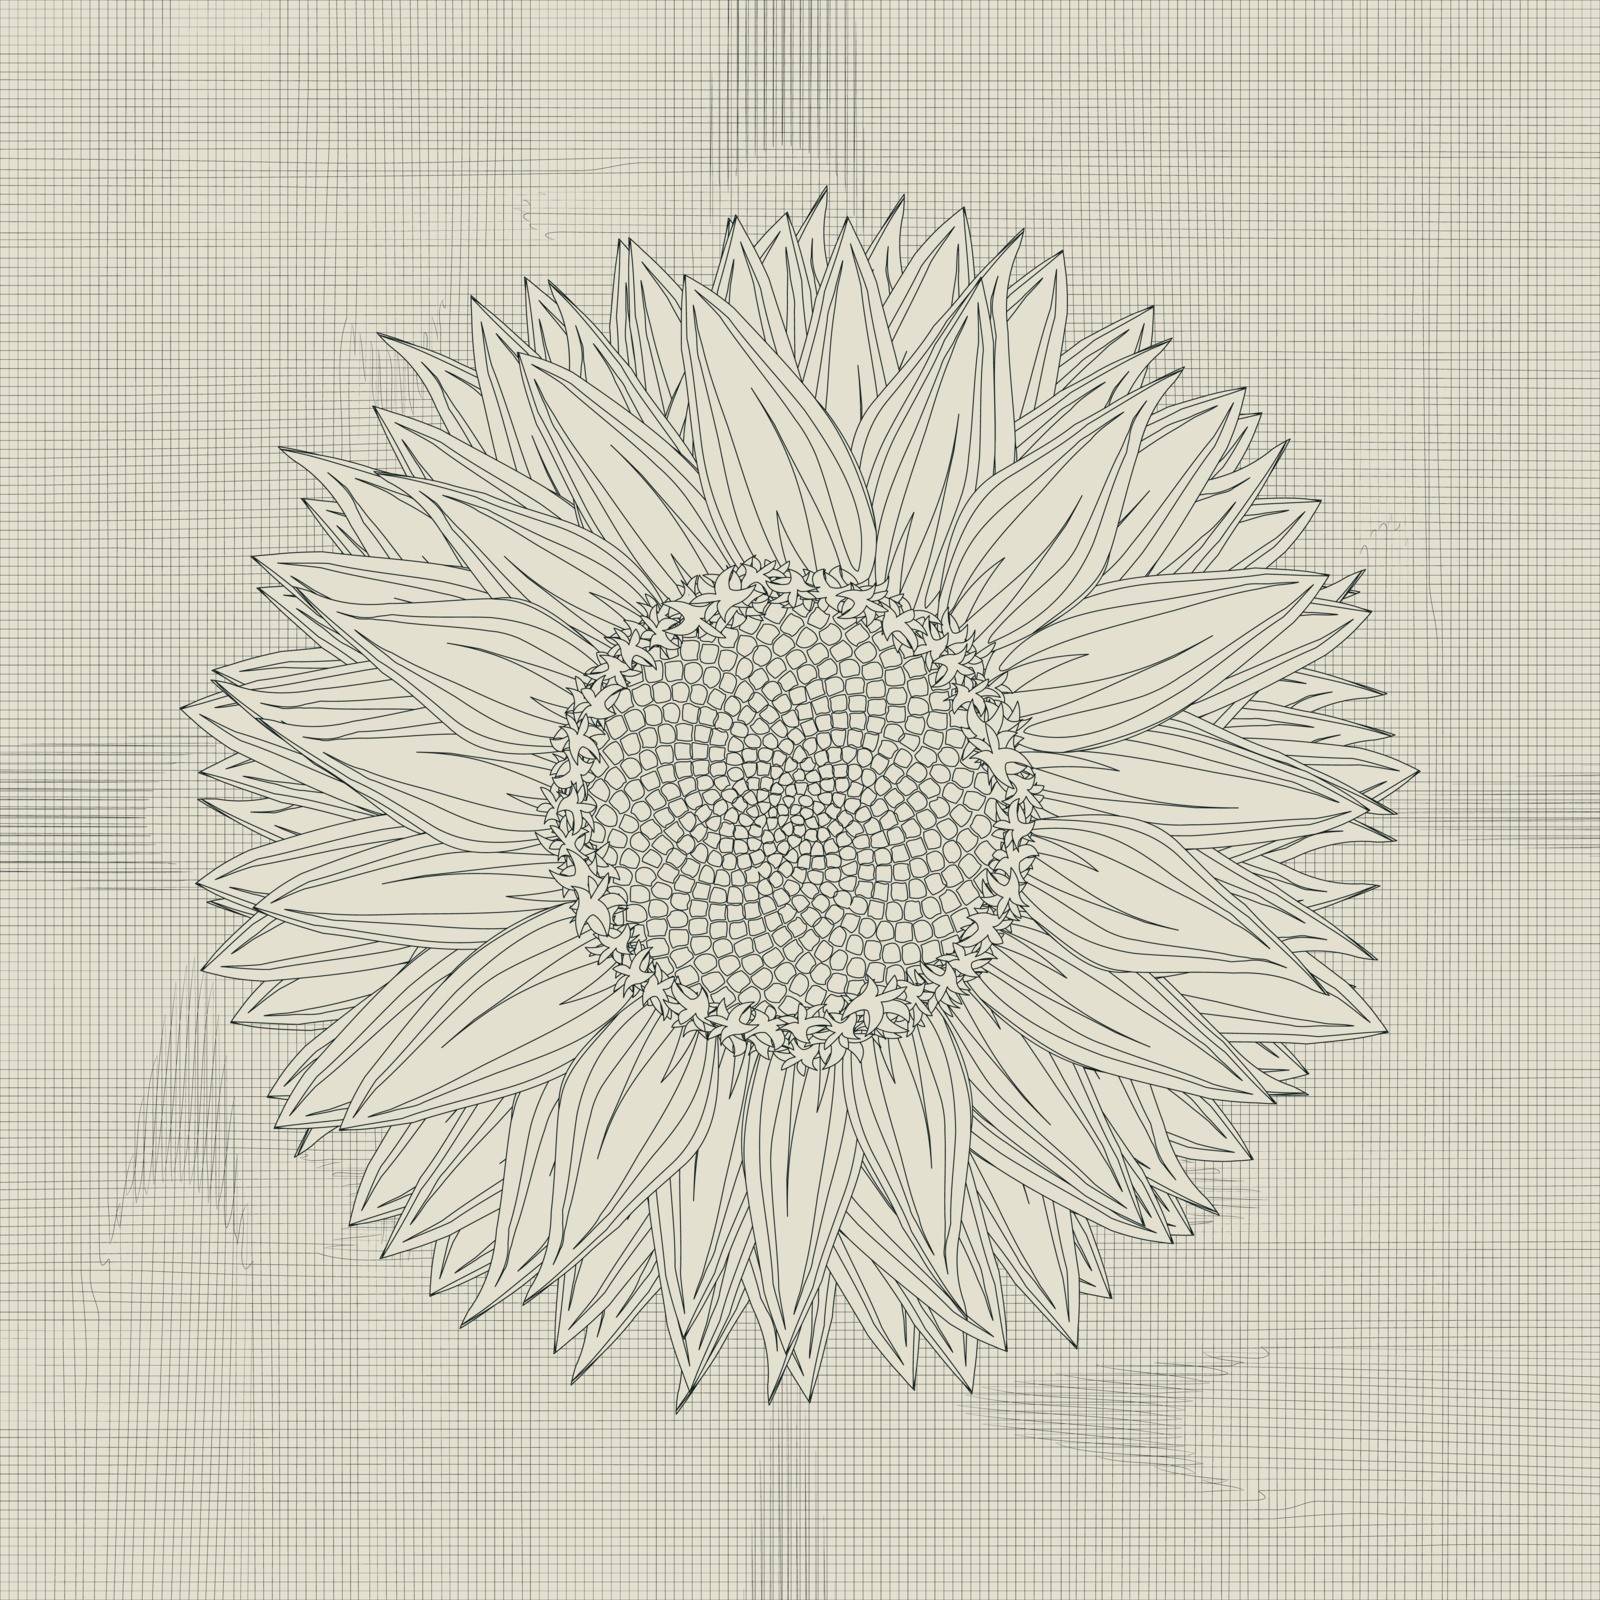 Sunflower grunge by Lirch